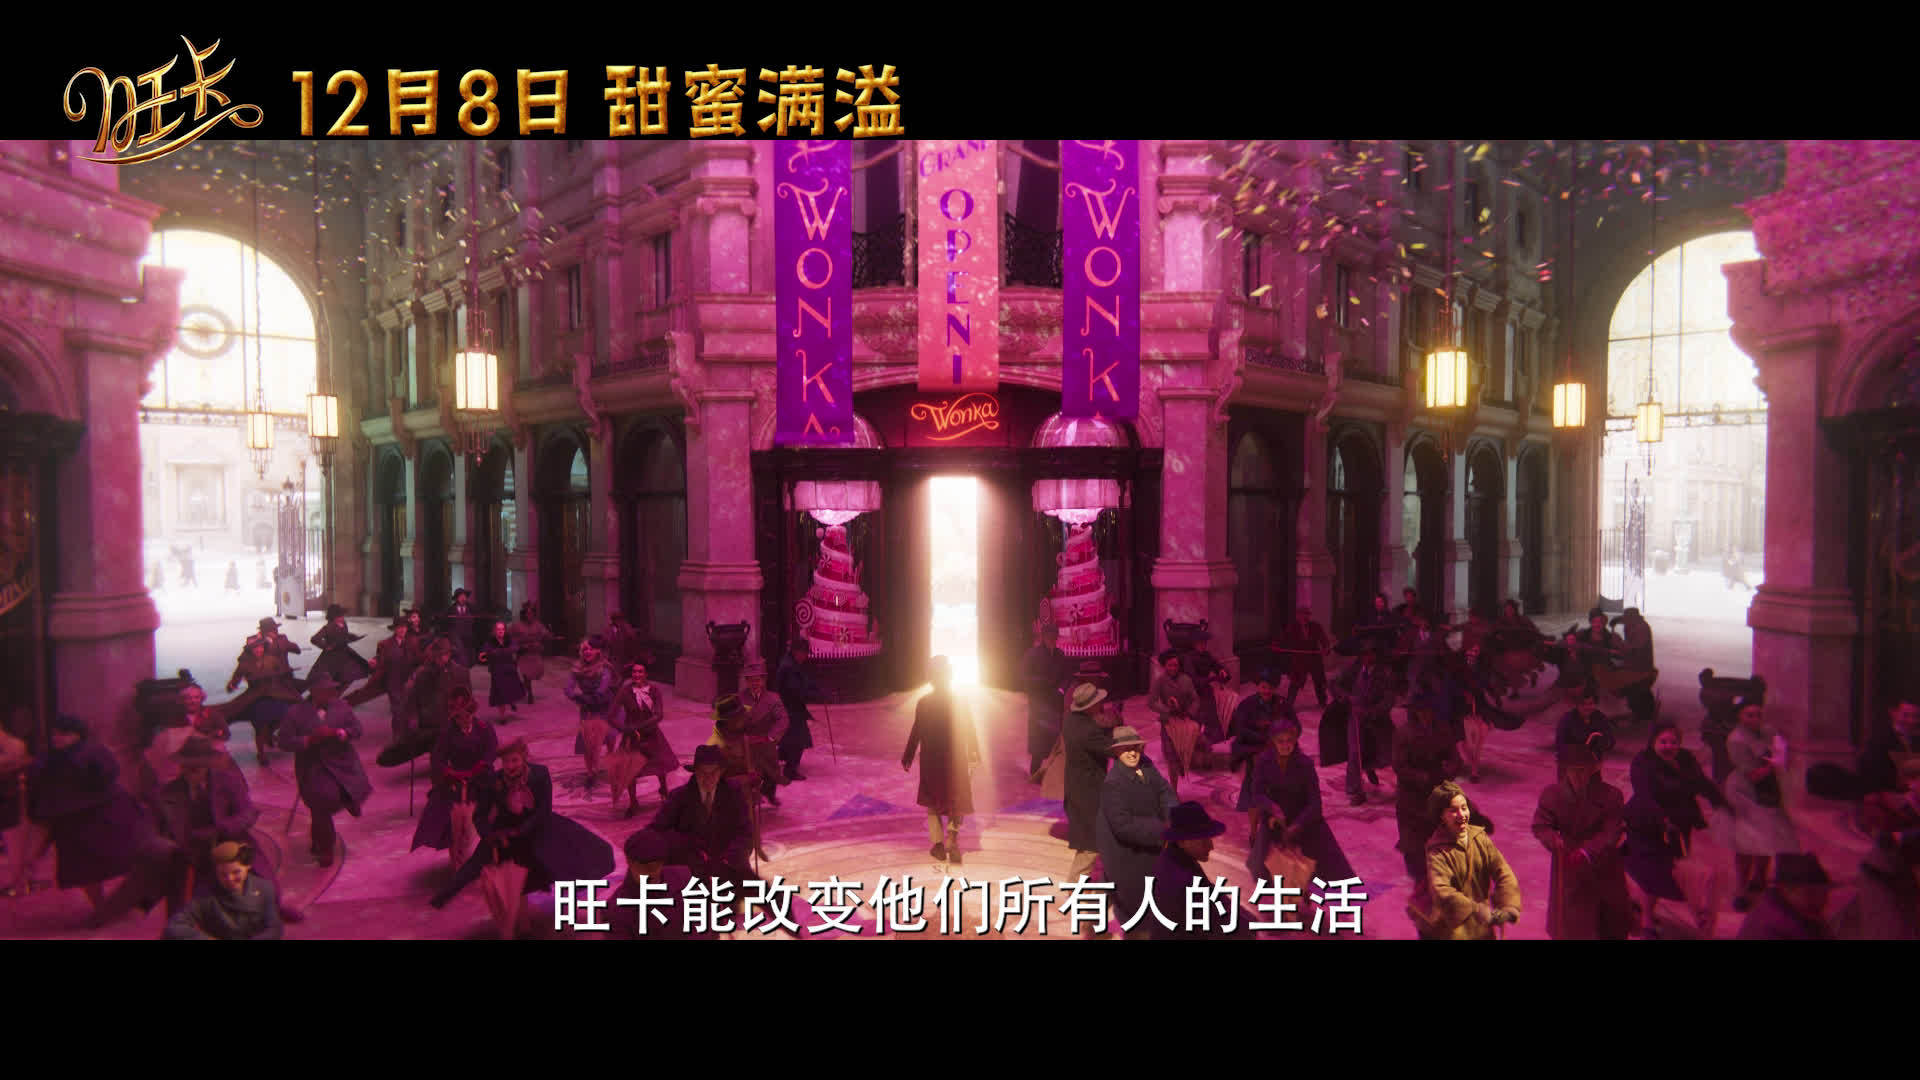 奇幻冒险电影《旺卡》发布“美妙启程”版预告